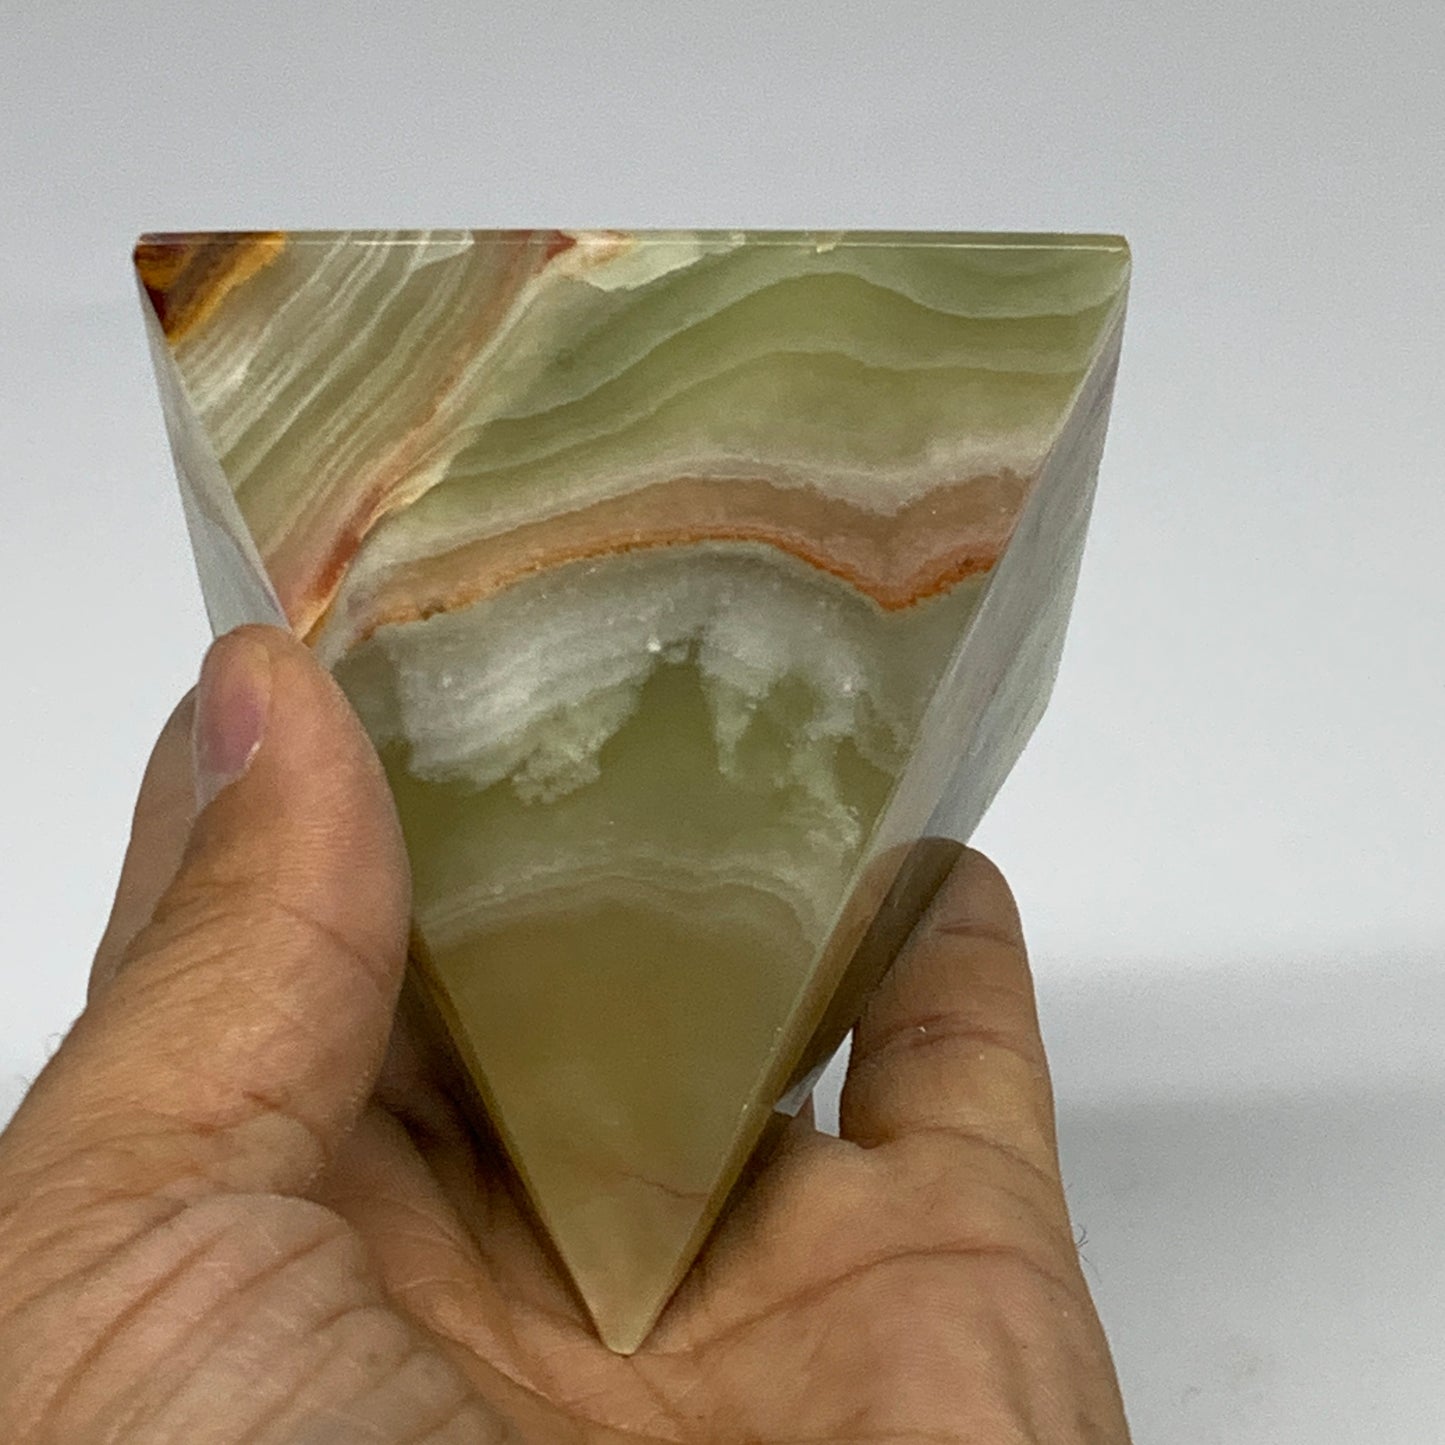 0.82 lbs, 2.8"x2.8"x2.8", Green Onyx Pyramid Gemstone Crystal, B32476